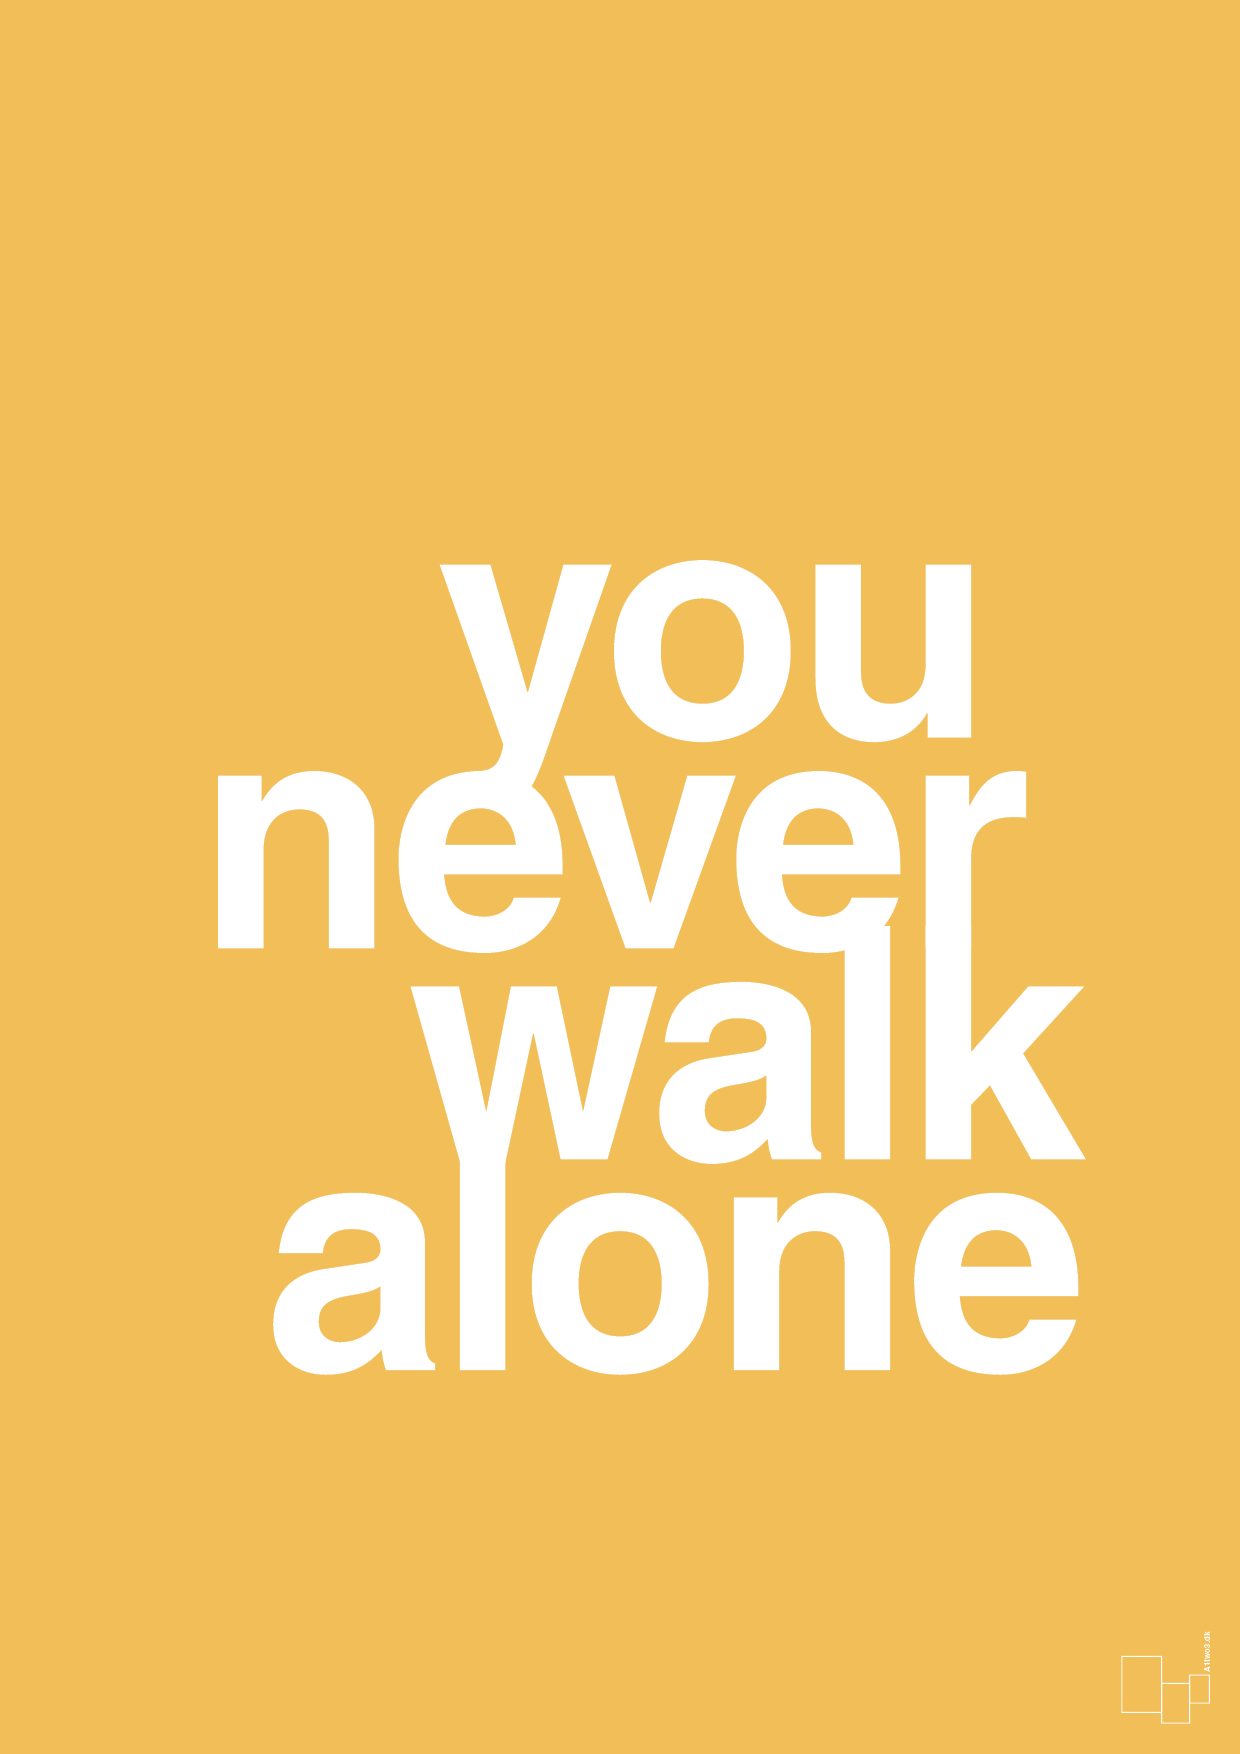 you never walk alone - Plakat med Ordsprog i Honeycomb